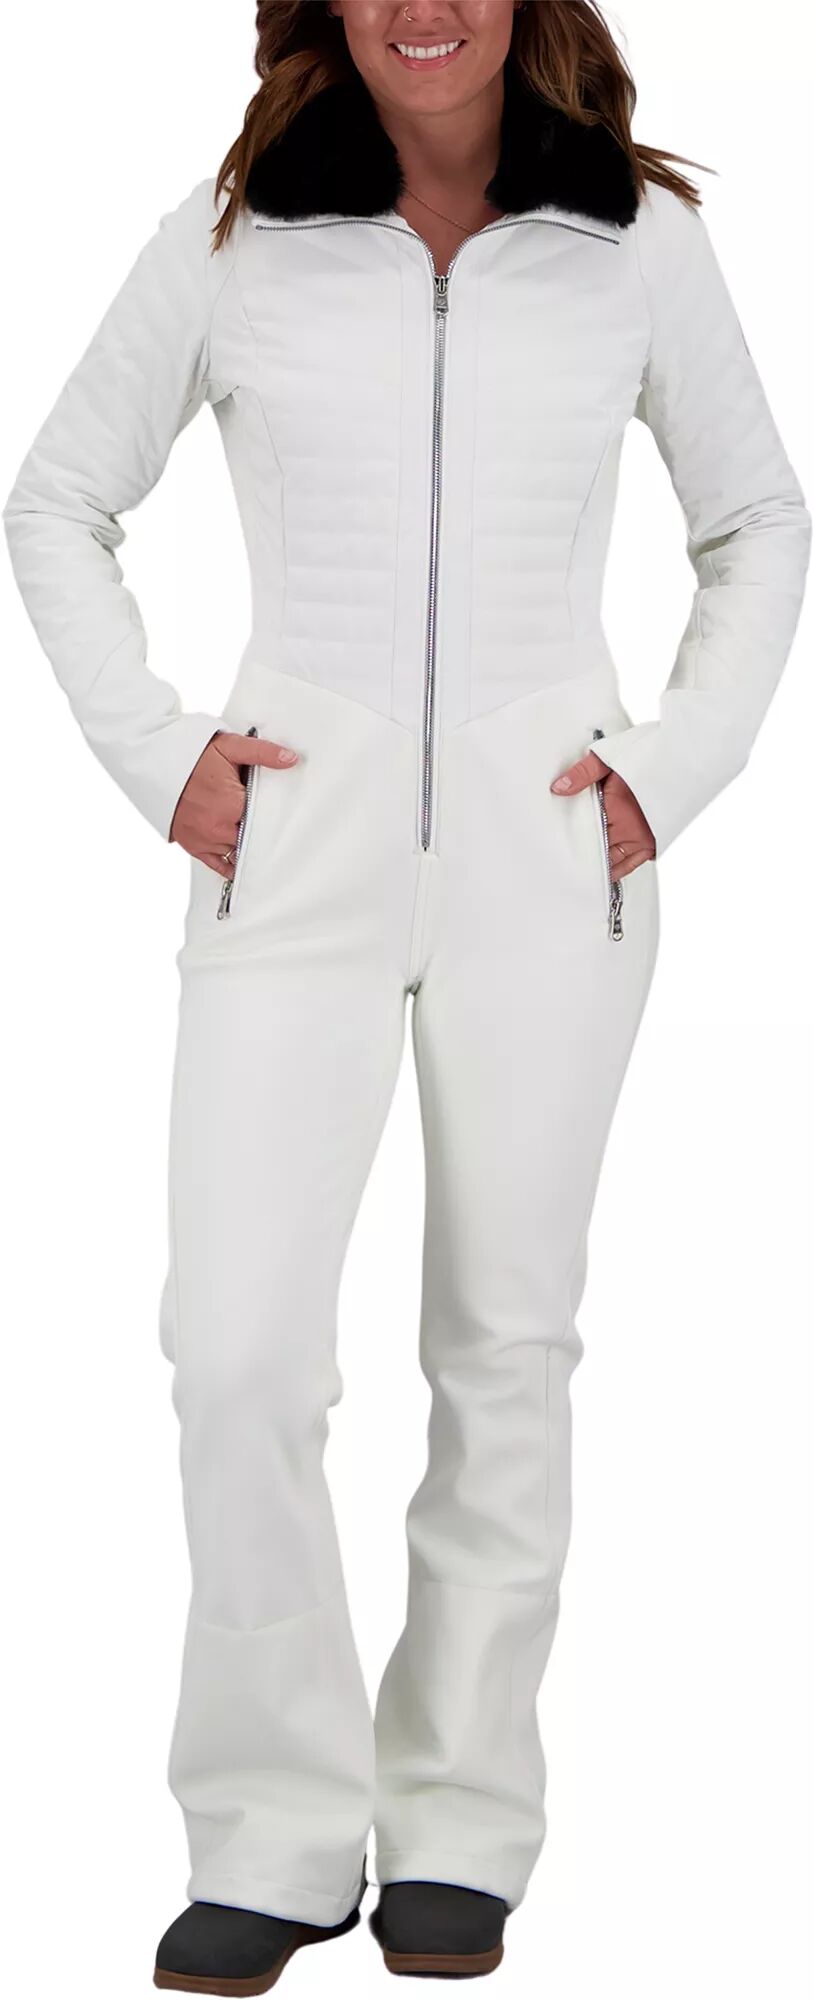 Photos - Ski Wear Obermeyer Women's Katze Winter Suit, Size 14, White 20obewwktzstxxxxxapo